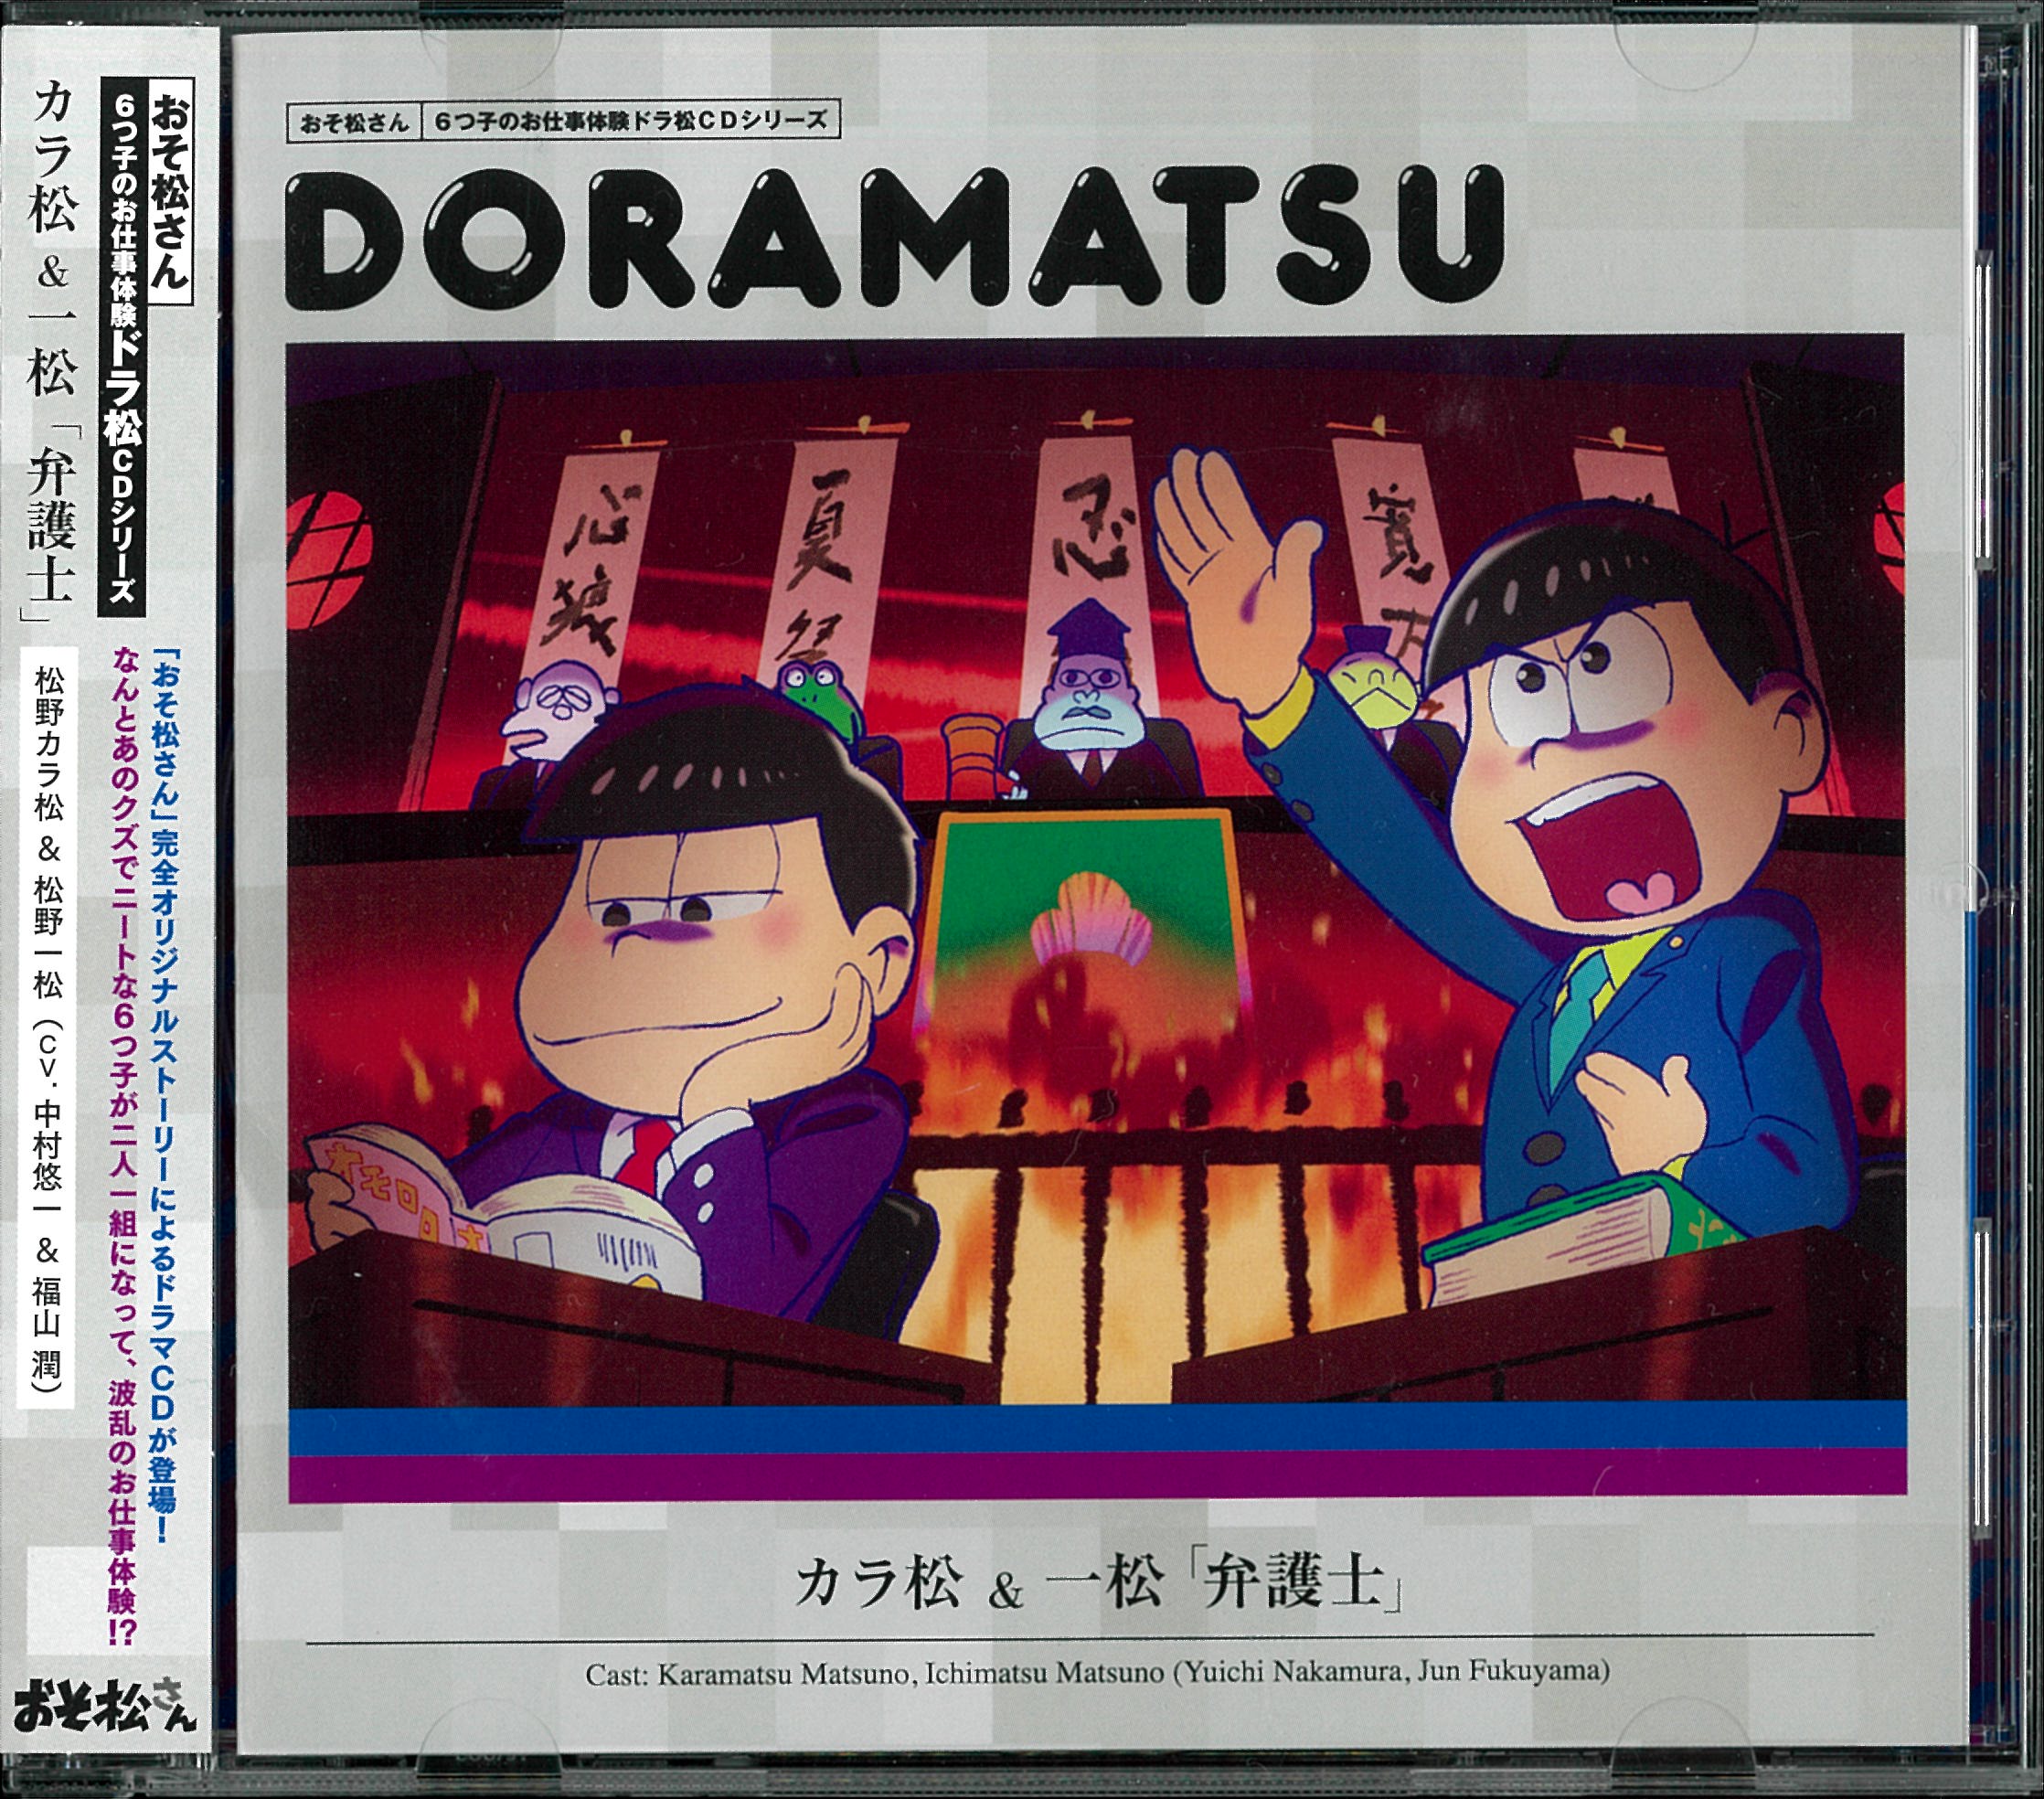 アニメCD カラ松&一松 6つ子のお仕事体験ドラ松CDシリーズ DORAMATSU